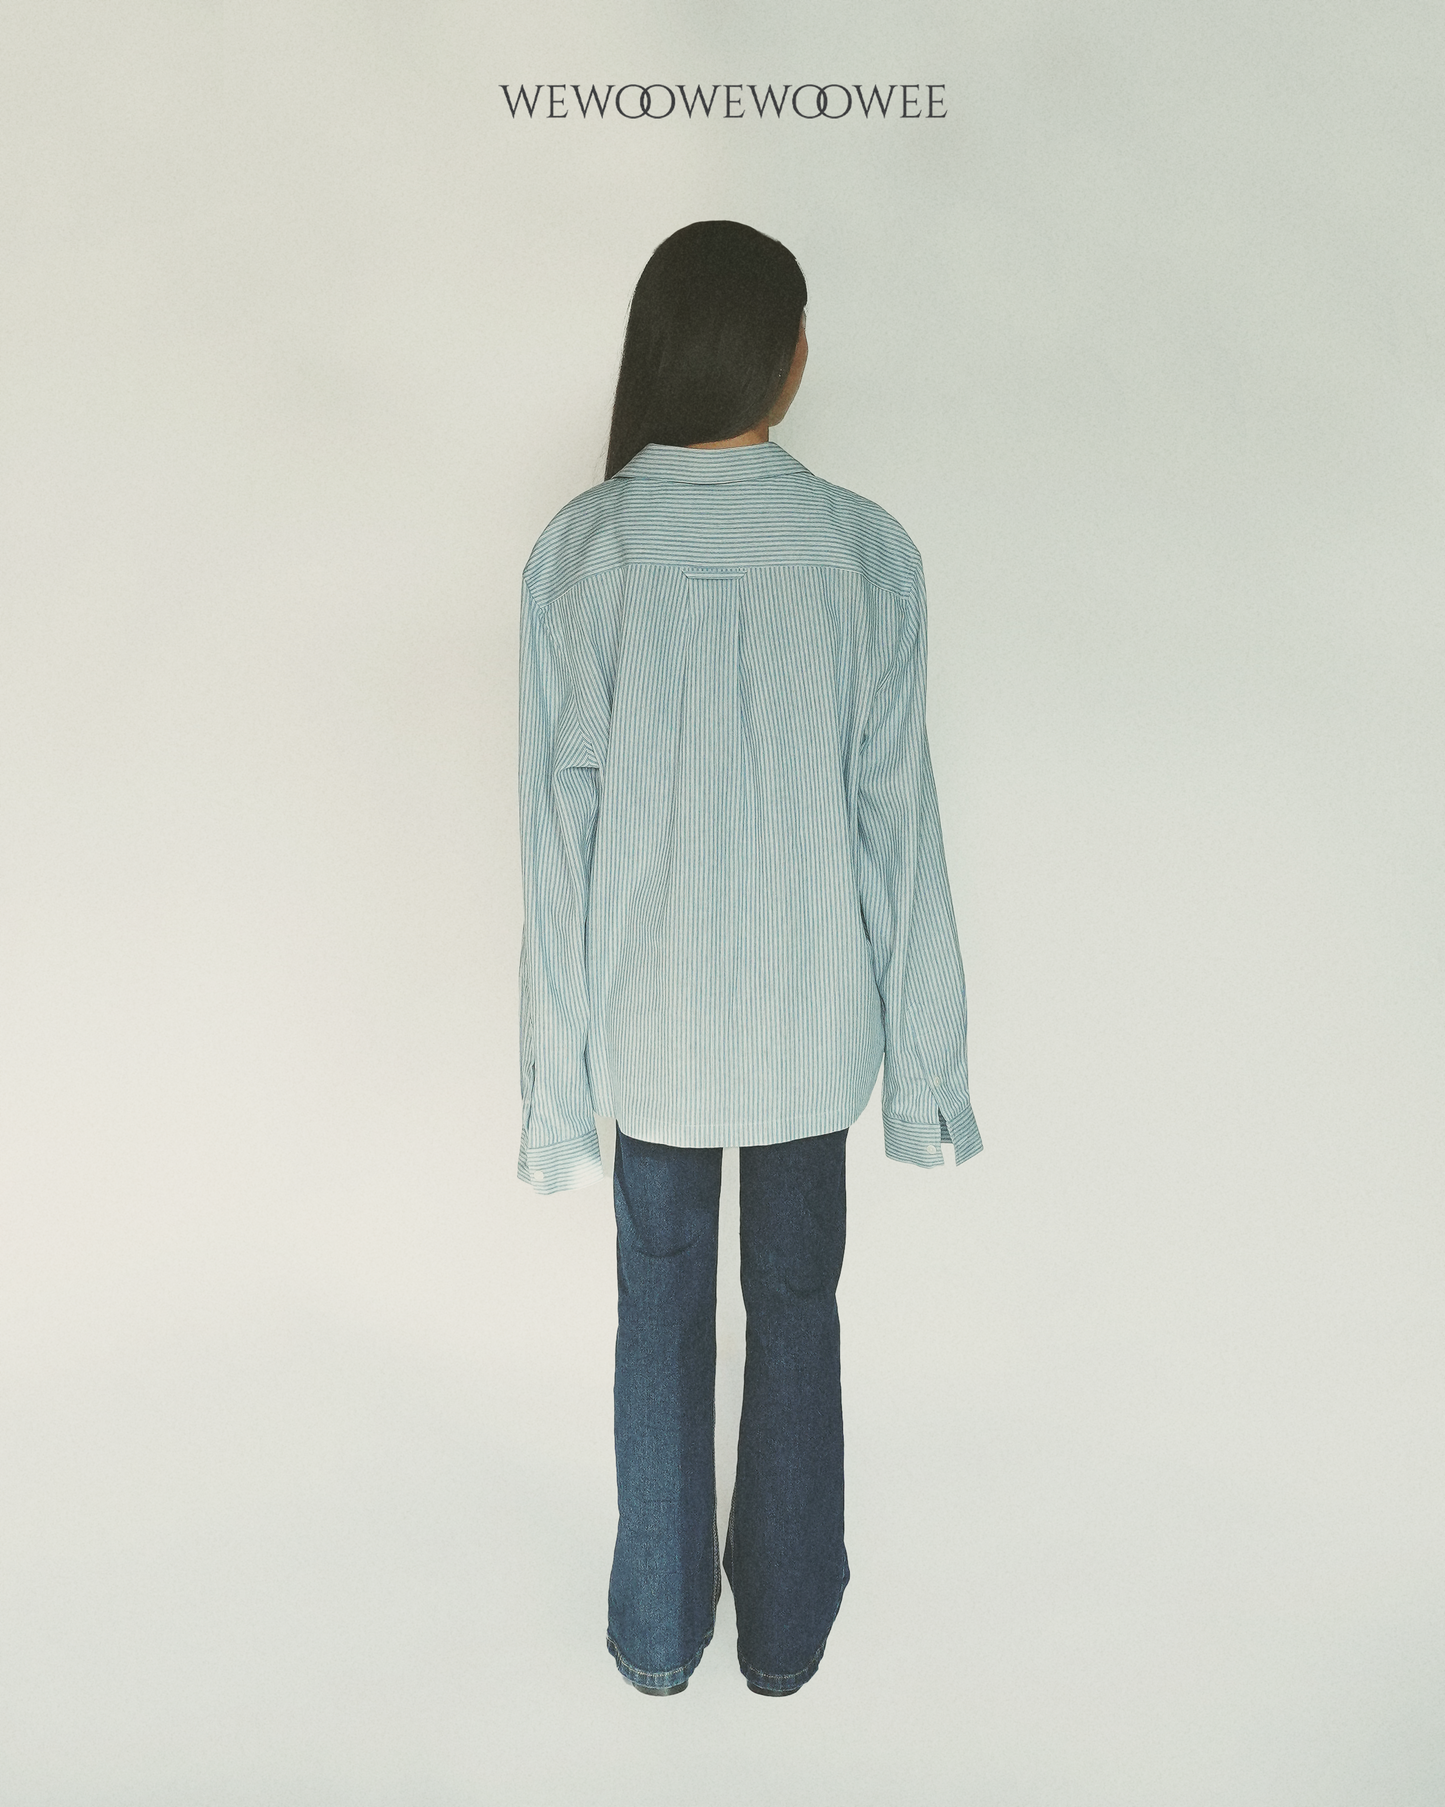 Lia Pocket Shirt - Striped Light Blue